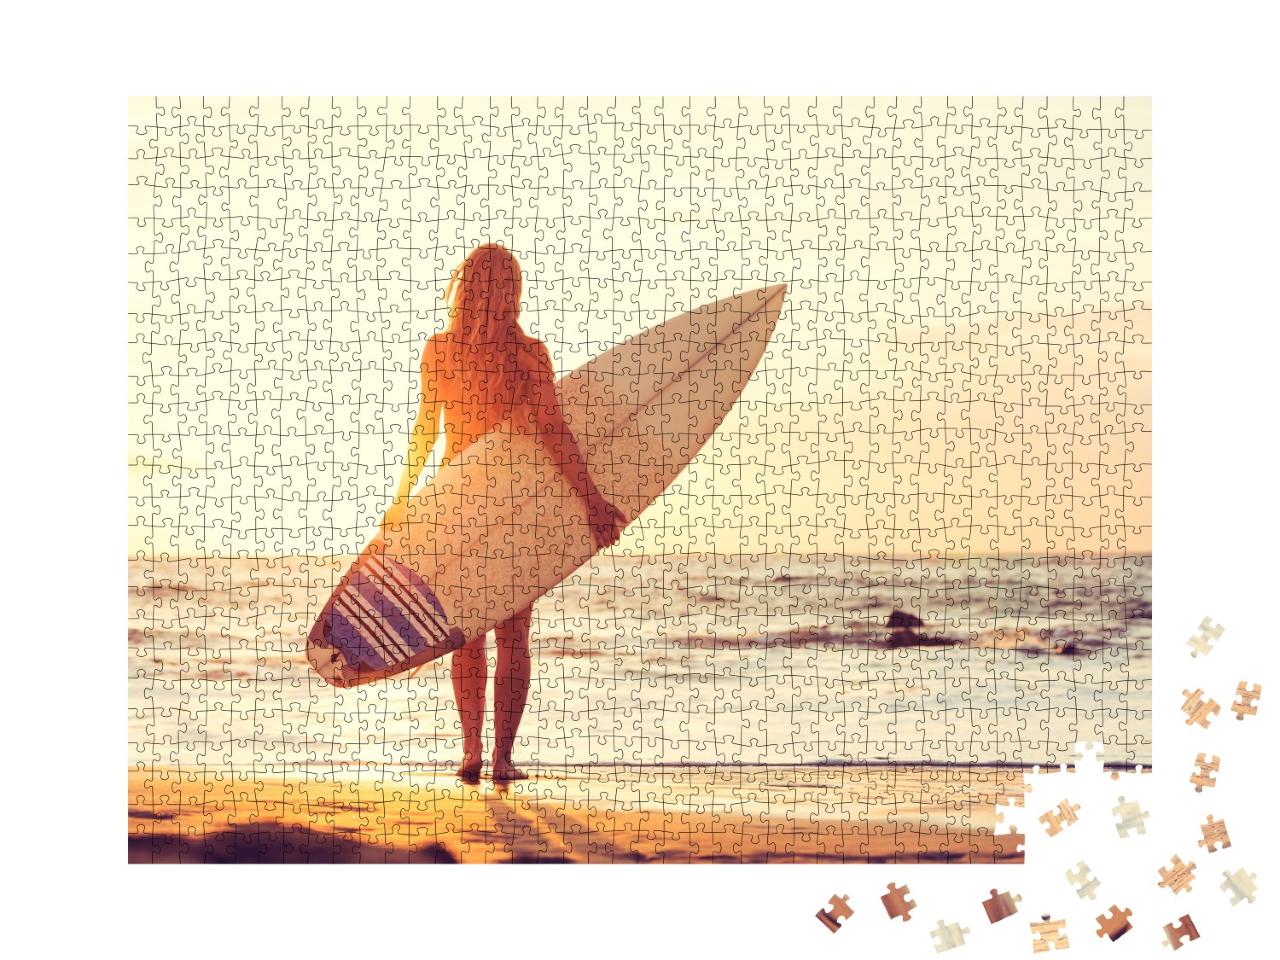 Puzzle de 1000 pièces « Surfeuse sur la plage au coucher du soleil »